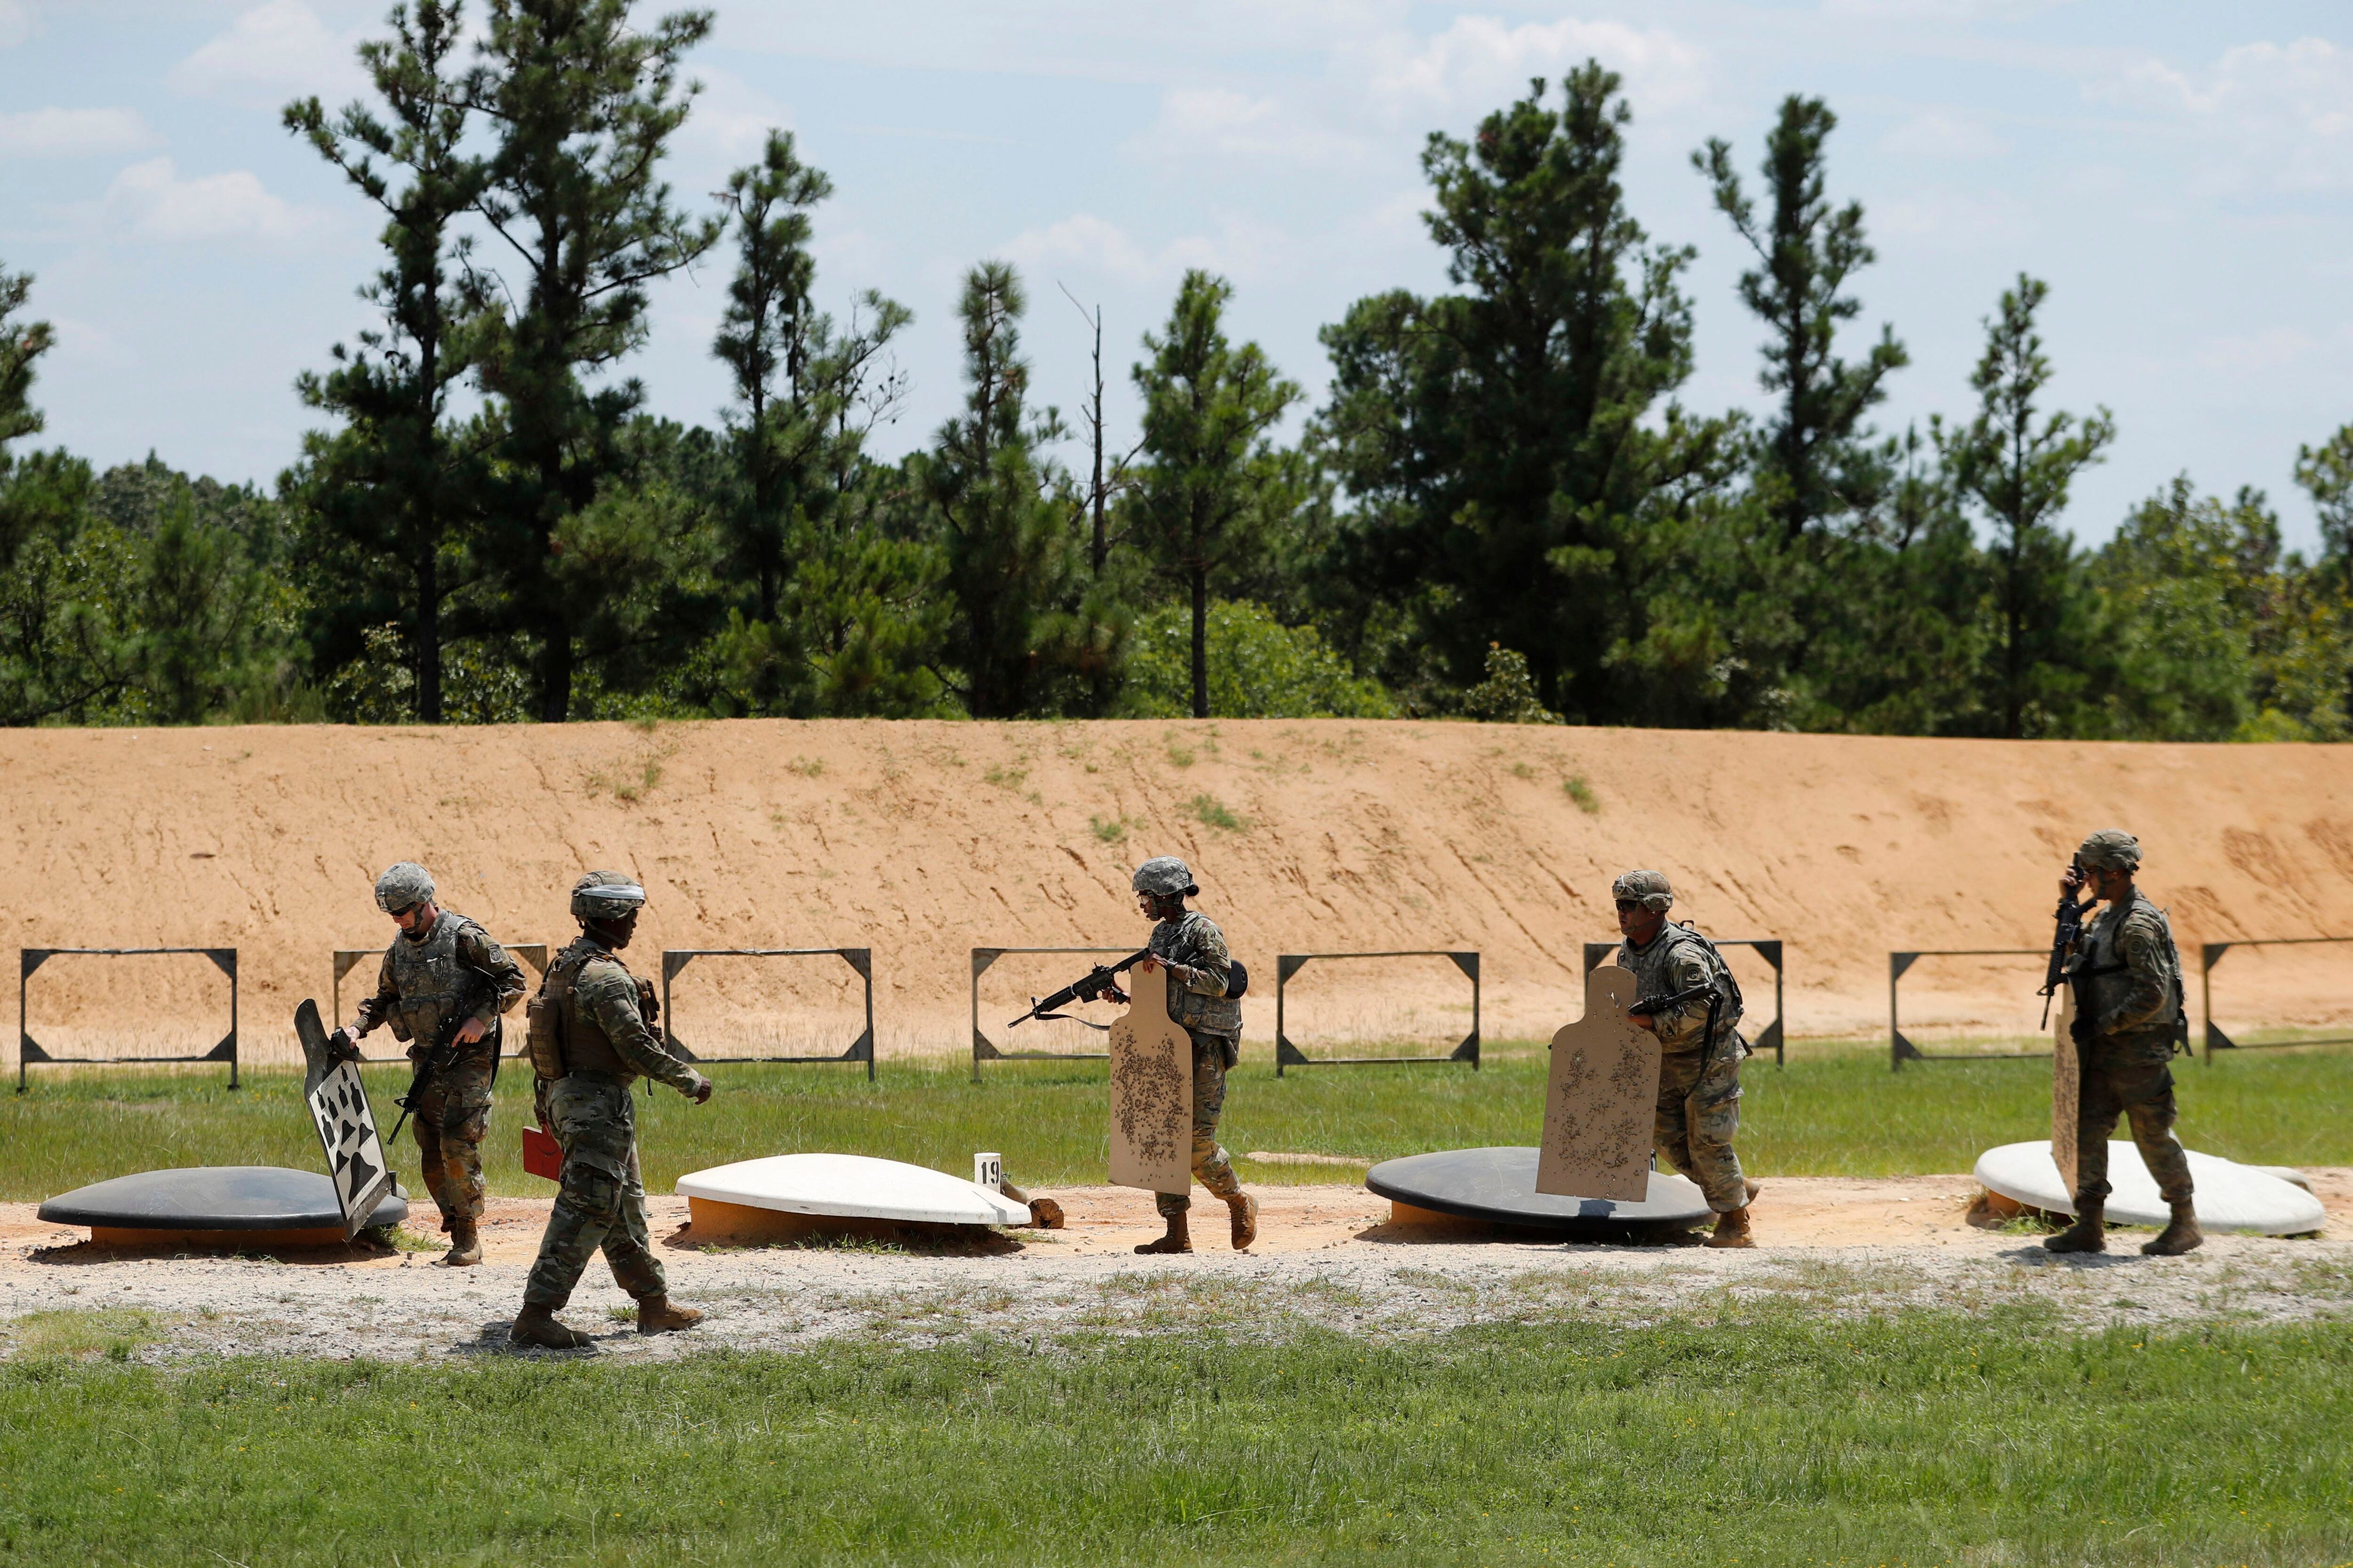 En esta imagen, tomada el 30 de julio de 2019, soldados se preparan para abandonar un campo de tiro, en Fort Braggs, Carolina del Norte. La zona en la que se disparan armas y se detonan bombas es el hábitat de la rara mariposa de Saint Francis Satyr. (AP Foto/Robert F. Bukaty)